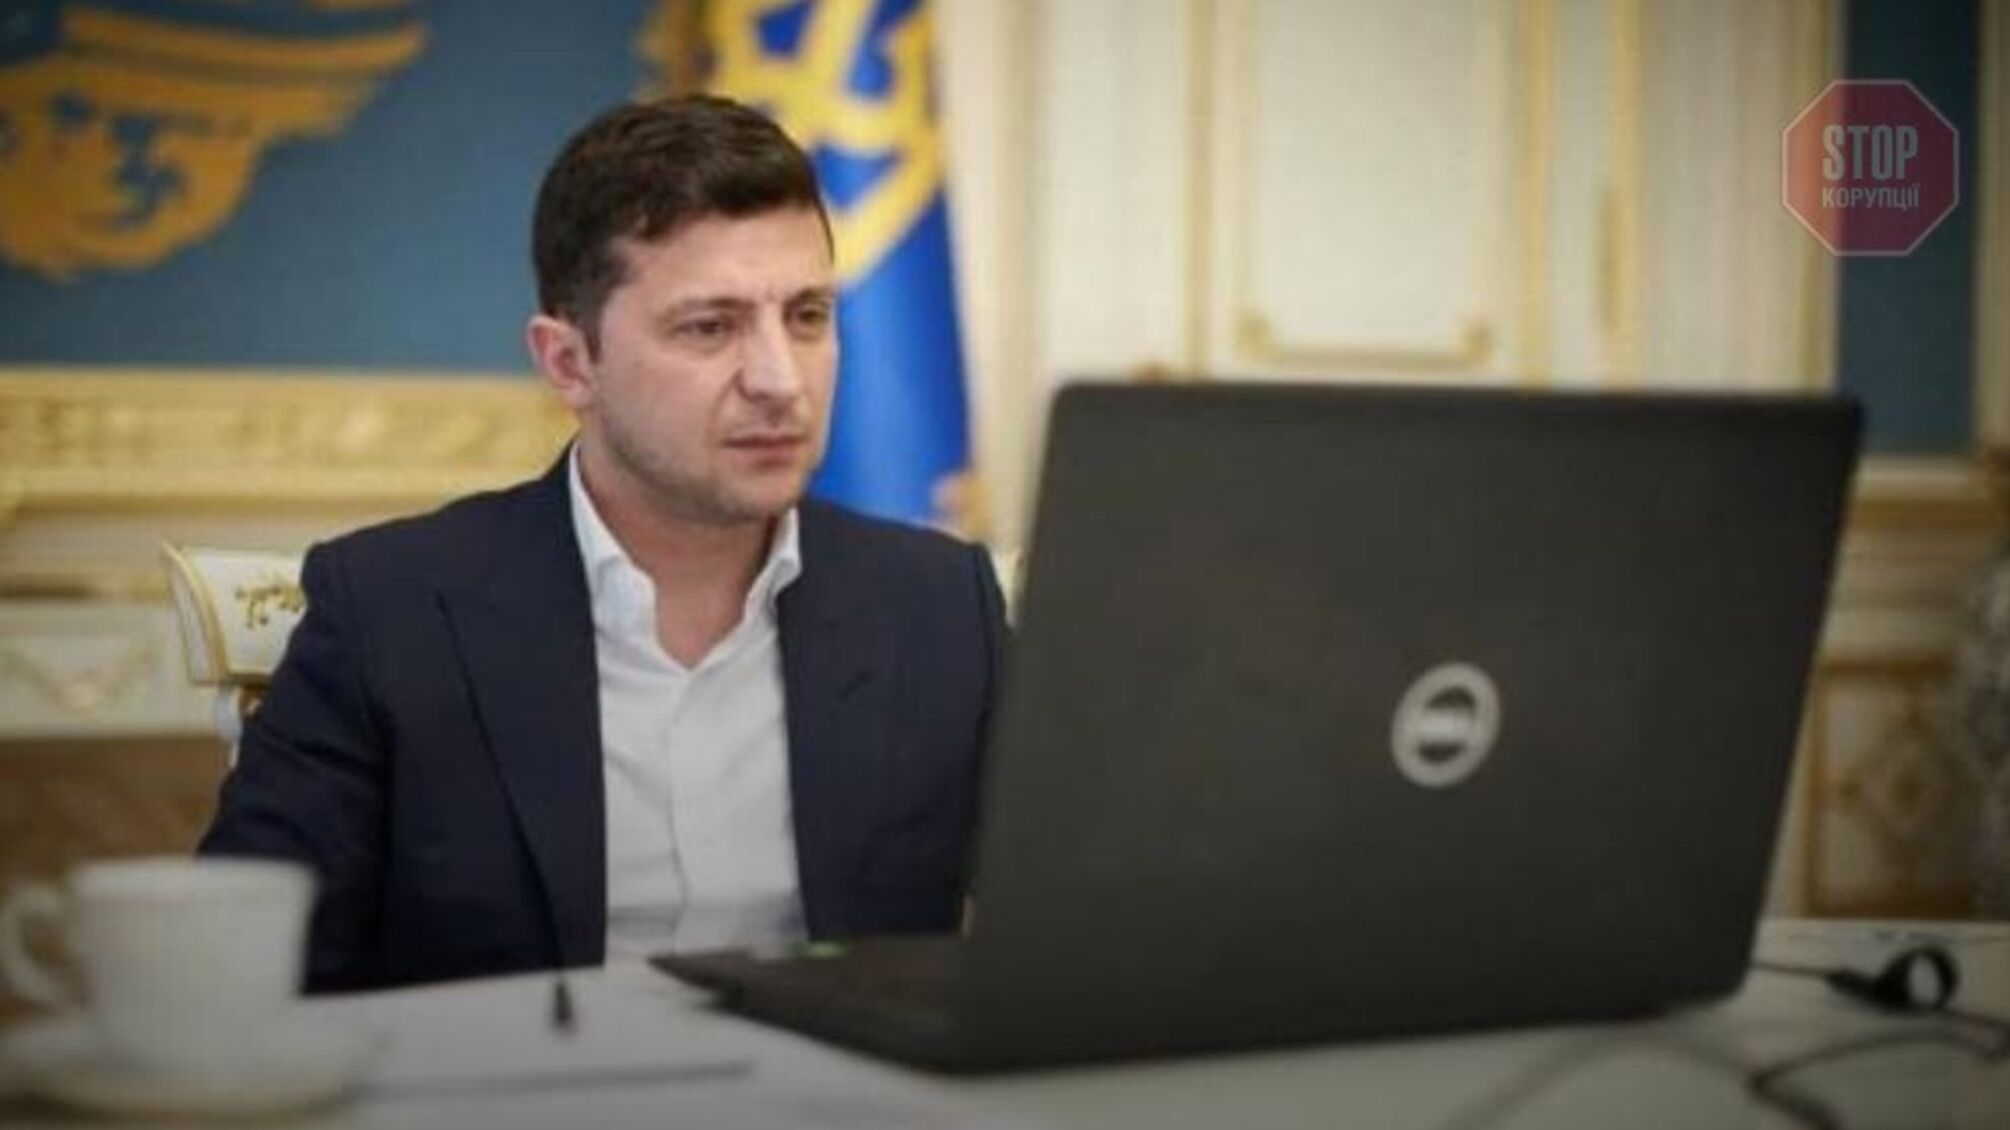 Каннабіс, депутати і Донбас: у Зеленського озвучили всі 5 запитань